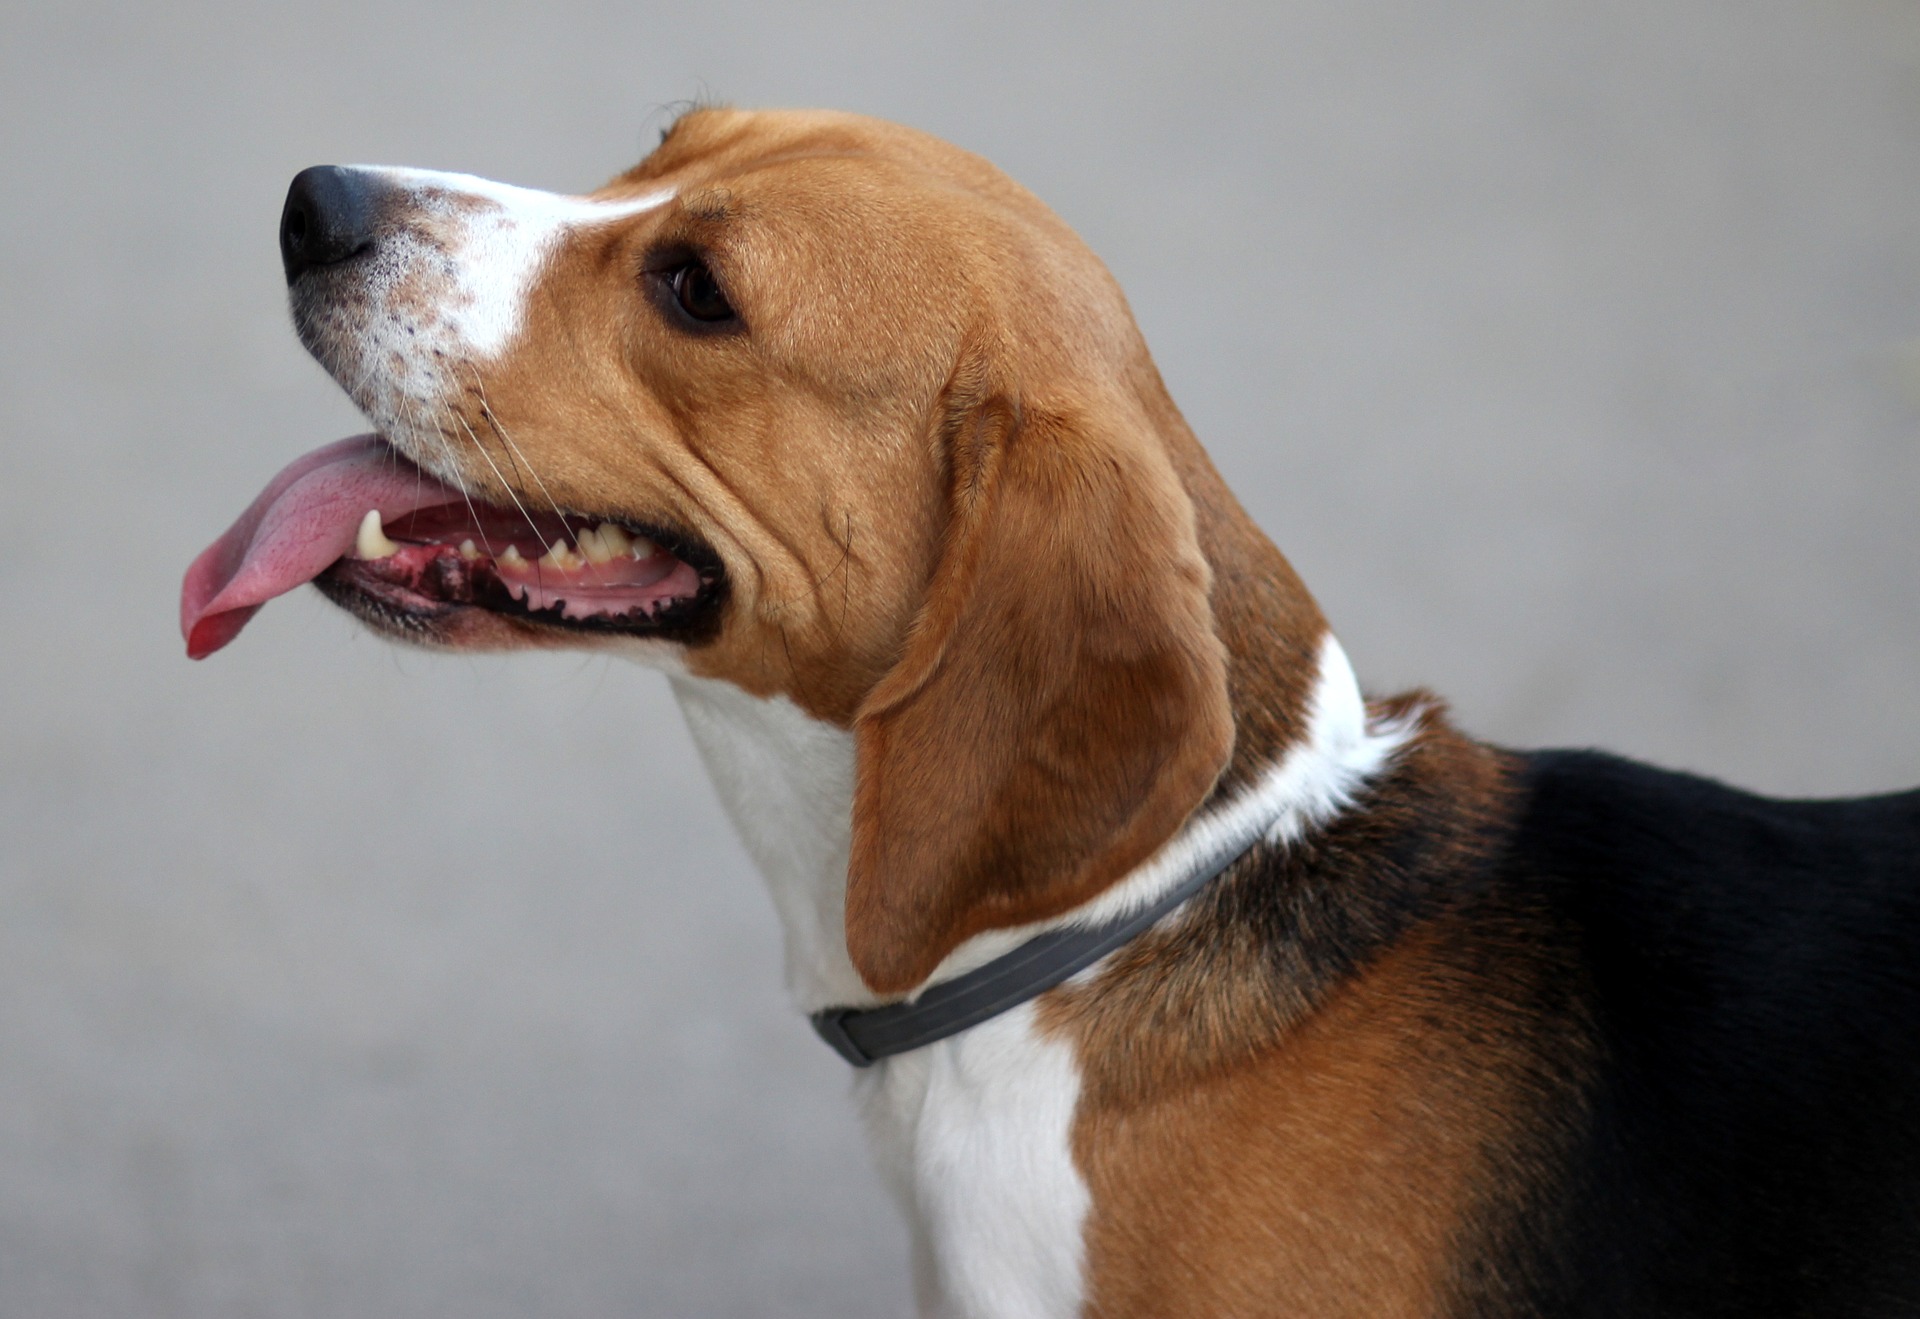 Bardzo żywiołowe i radosne psy rasy beagle mają tendencję do uciekania jeżeli wyczują jakiś ciekawy zapach. Jest to rasa, która wymaga sporo zaangażowania ze strony opiekuna.